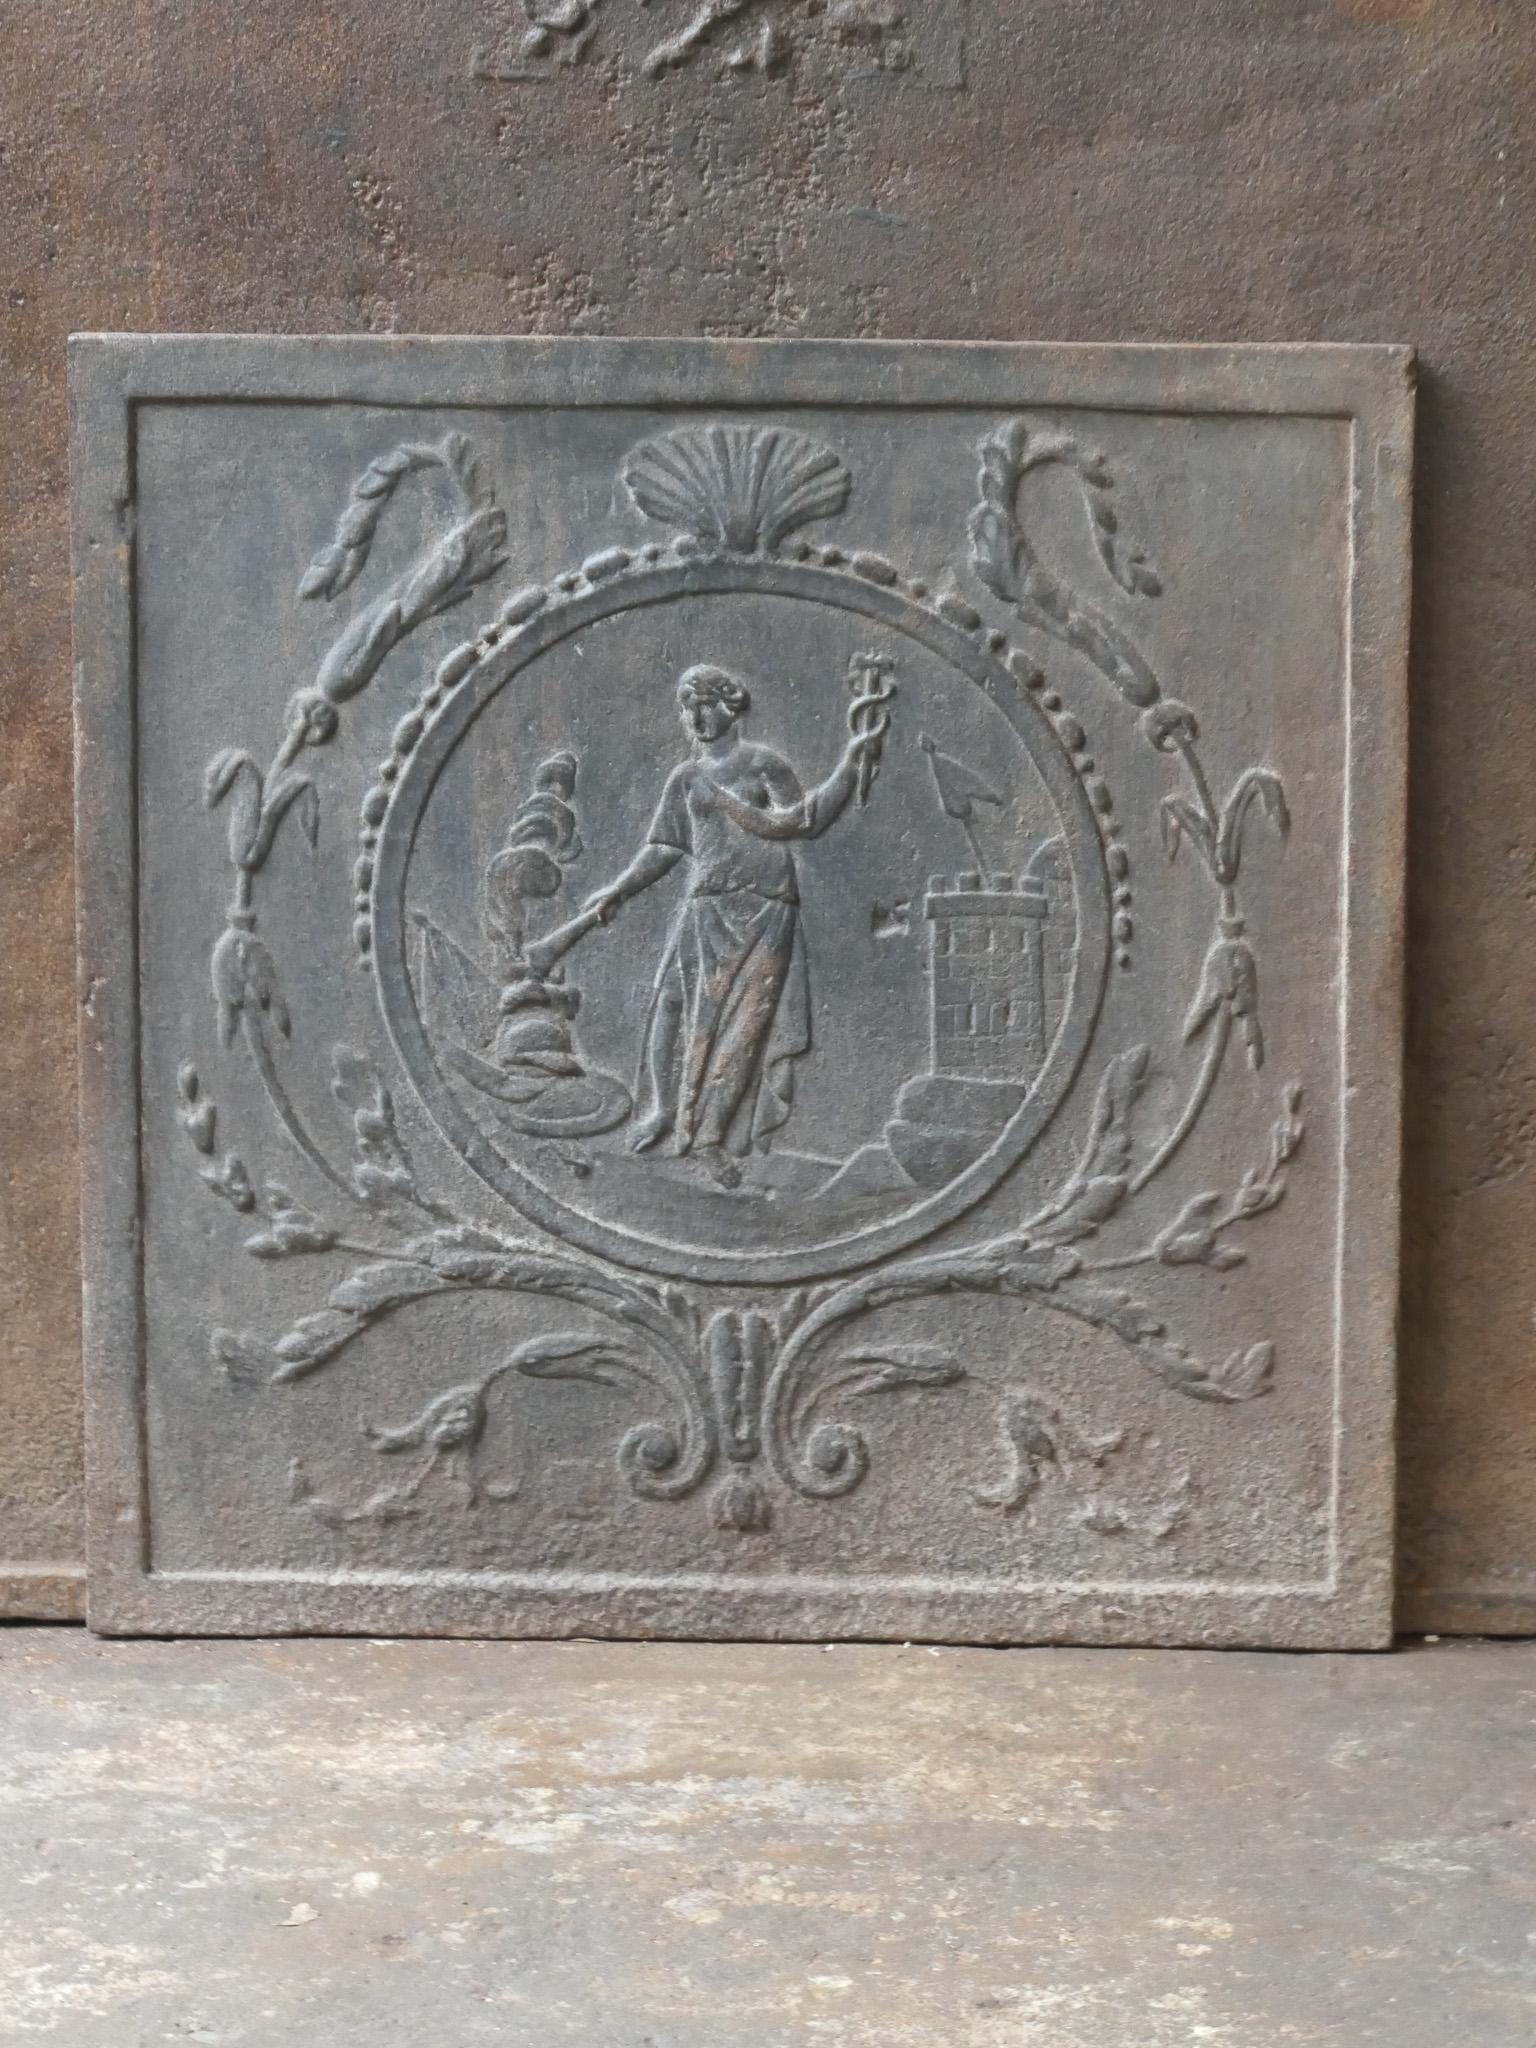 Französischer Neoklassizismus des 20. Jahrhunderts mit der Göttin Hestia auf der Rückwand.

Die Fackel ist das Symbol der Hestia, der Göttin des Feuers und insbesondere des häuslichen Herdes. Wo es kein Feuer gibt, ist eine gemütliche, geregelte